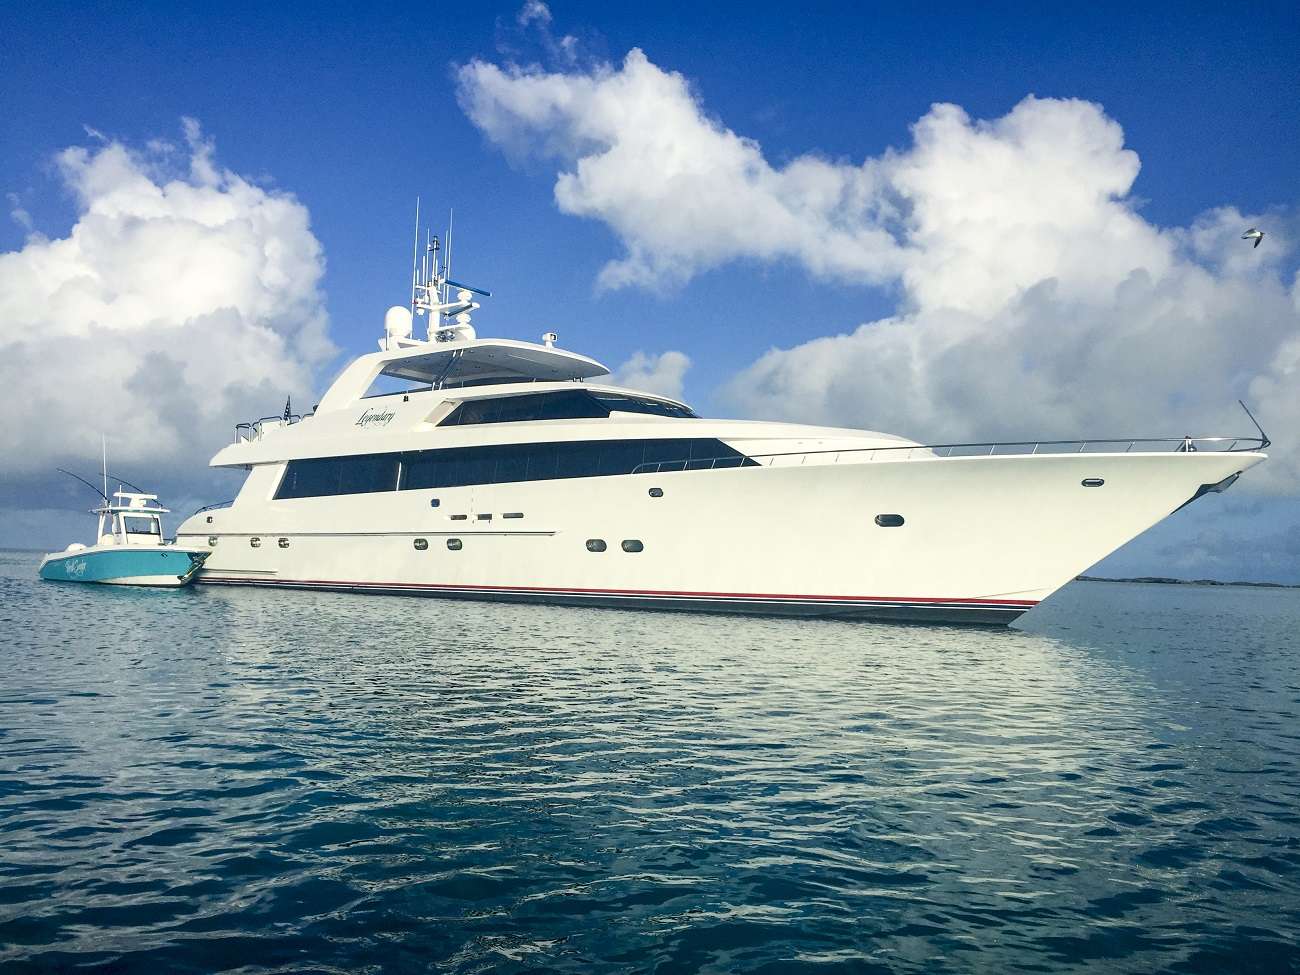 legendary - Yacht Charter Miami & Boat hire in Florida & Bahamas 1